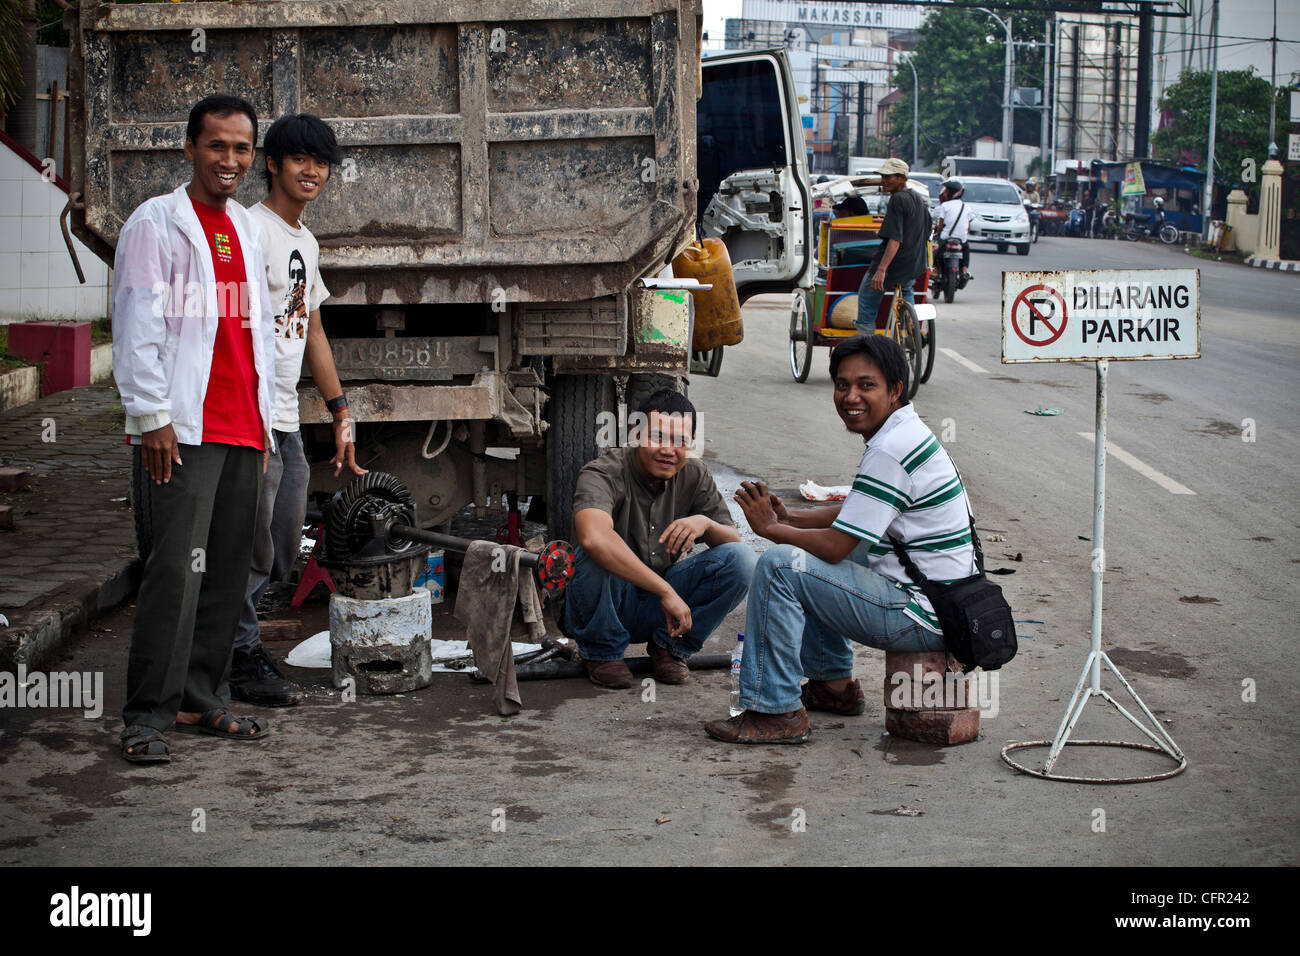 Les hommes de la réparation d'un camion cassé dans une rue de Makassar (Ujung Pandang), Sulawesi, Indonésie, Asie, Pacifique Sud. Banque D'Images